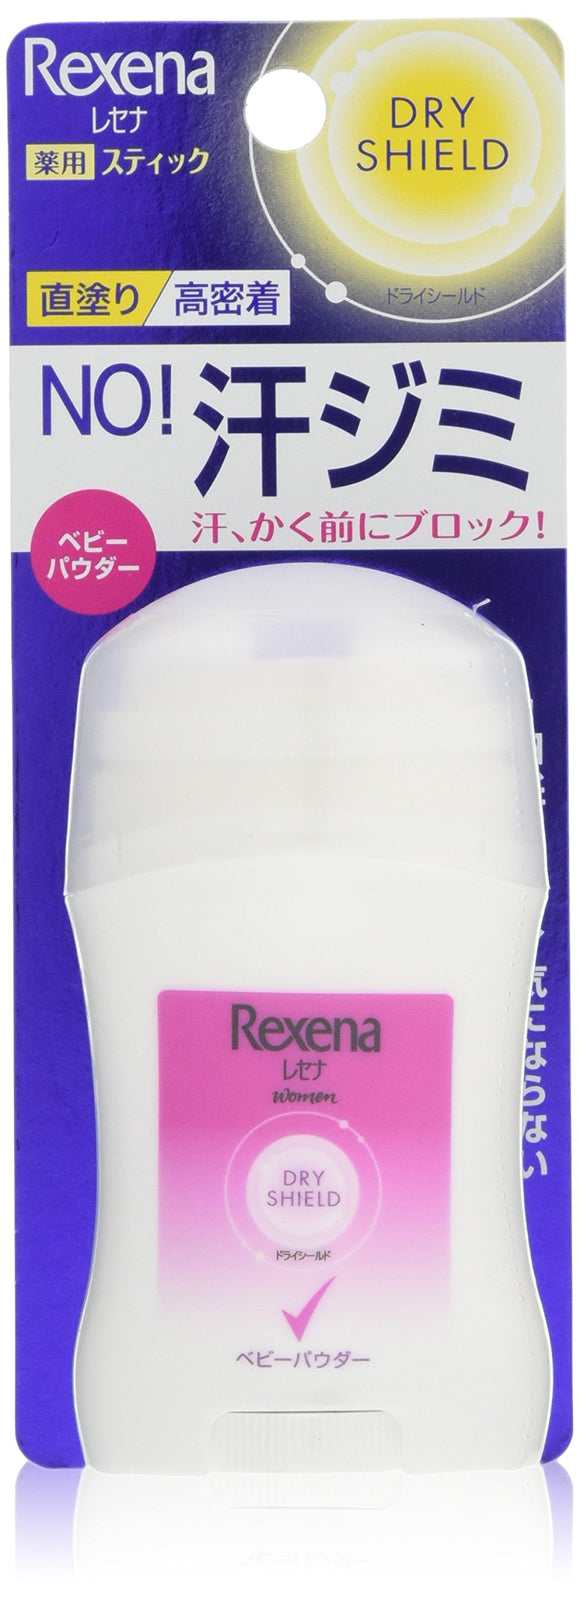 Resena Dry Shield Powder Stick Baby Powder 20g Antiperspirant